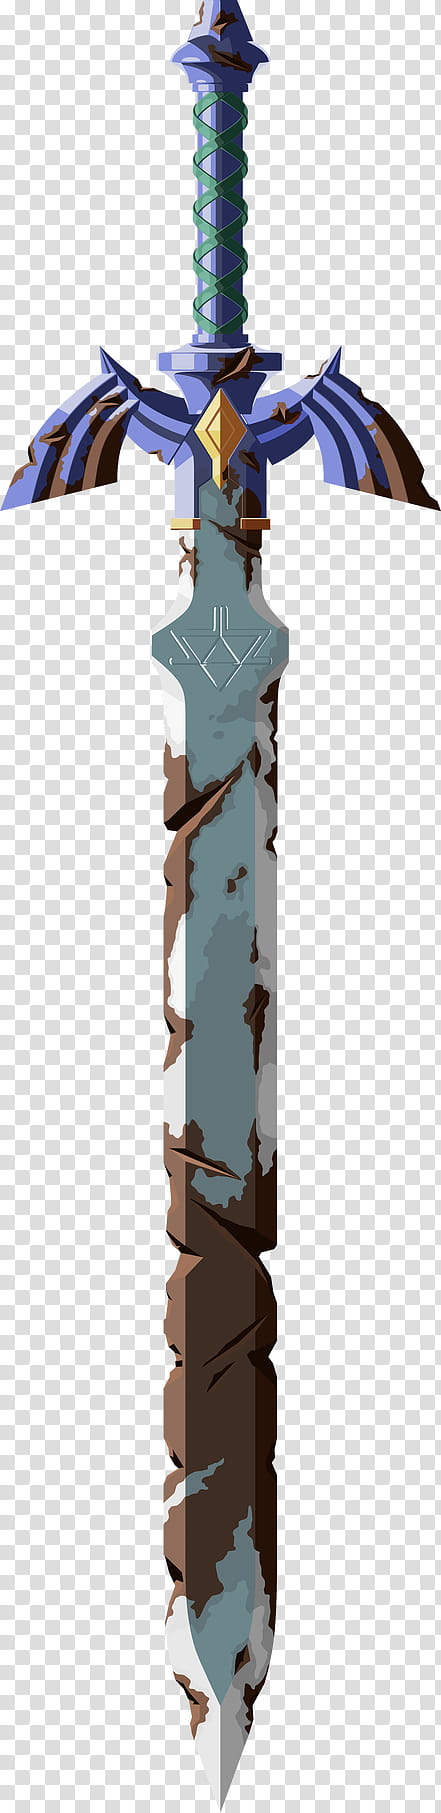 Rusted Master Sword (Hi-res), blue sword illustration transparent background PNG clipart